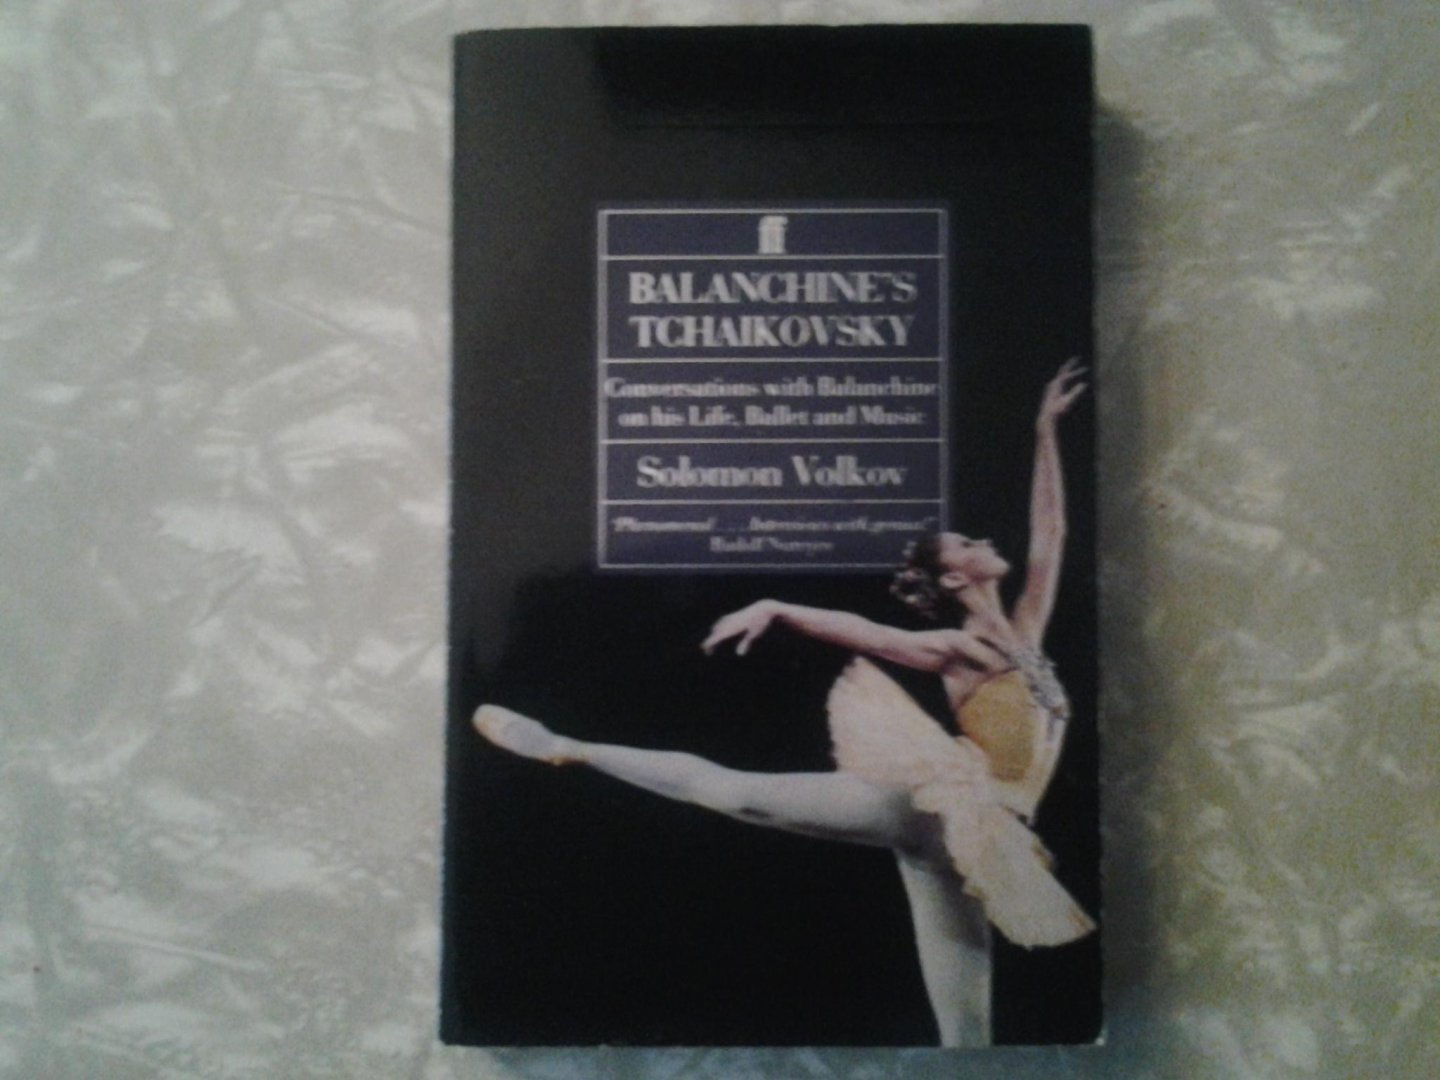 Volkov, Solomon - Balanchine's Tchaikovsky